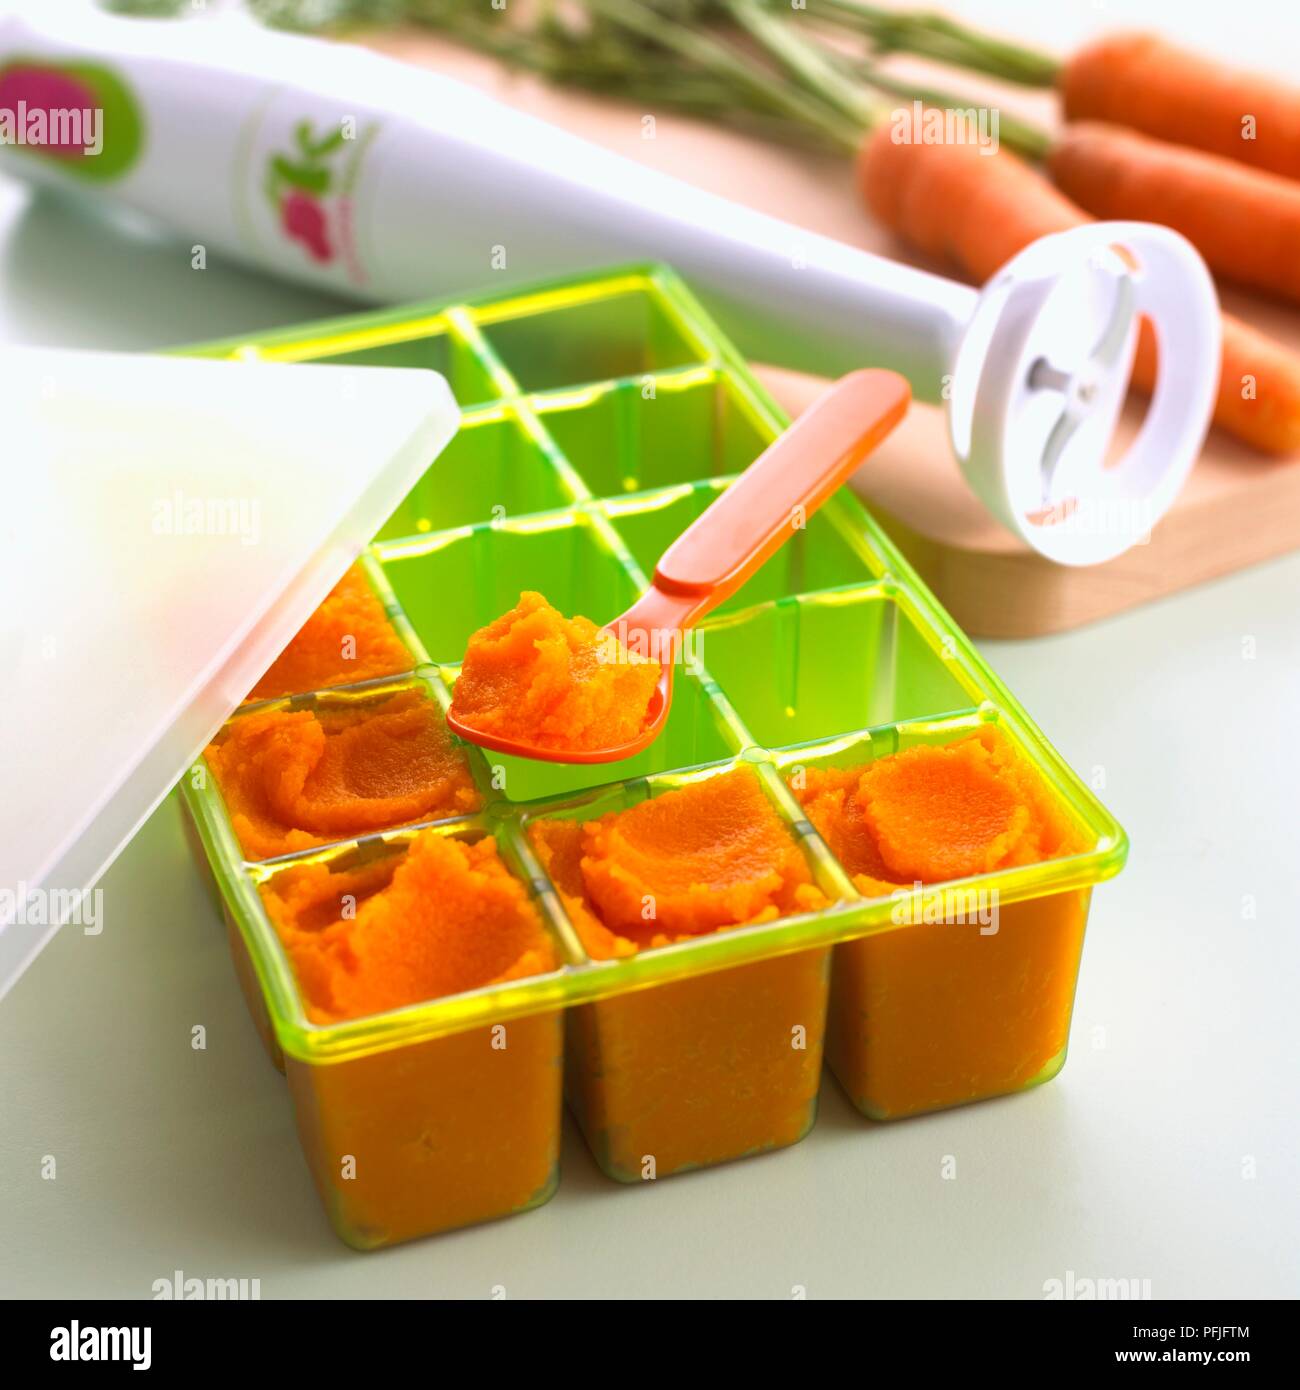 Porzioni di purea di carota congelati in un vassoio di plastica, frullatore a immersione e le carote fresche nelle vicinanze, close-up Foto Stock